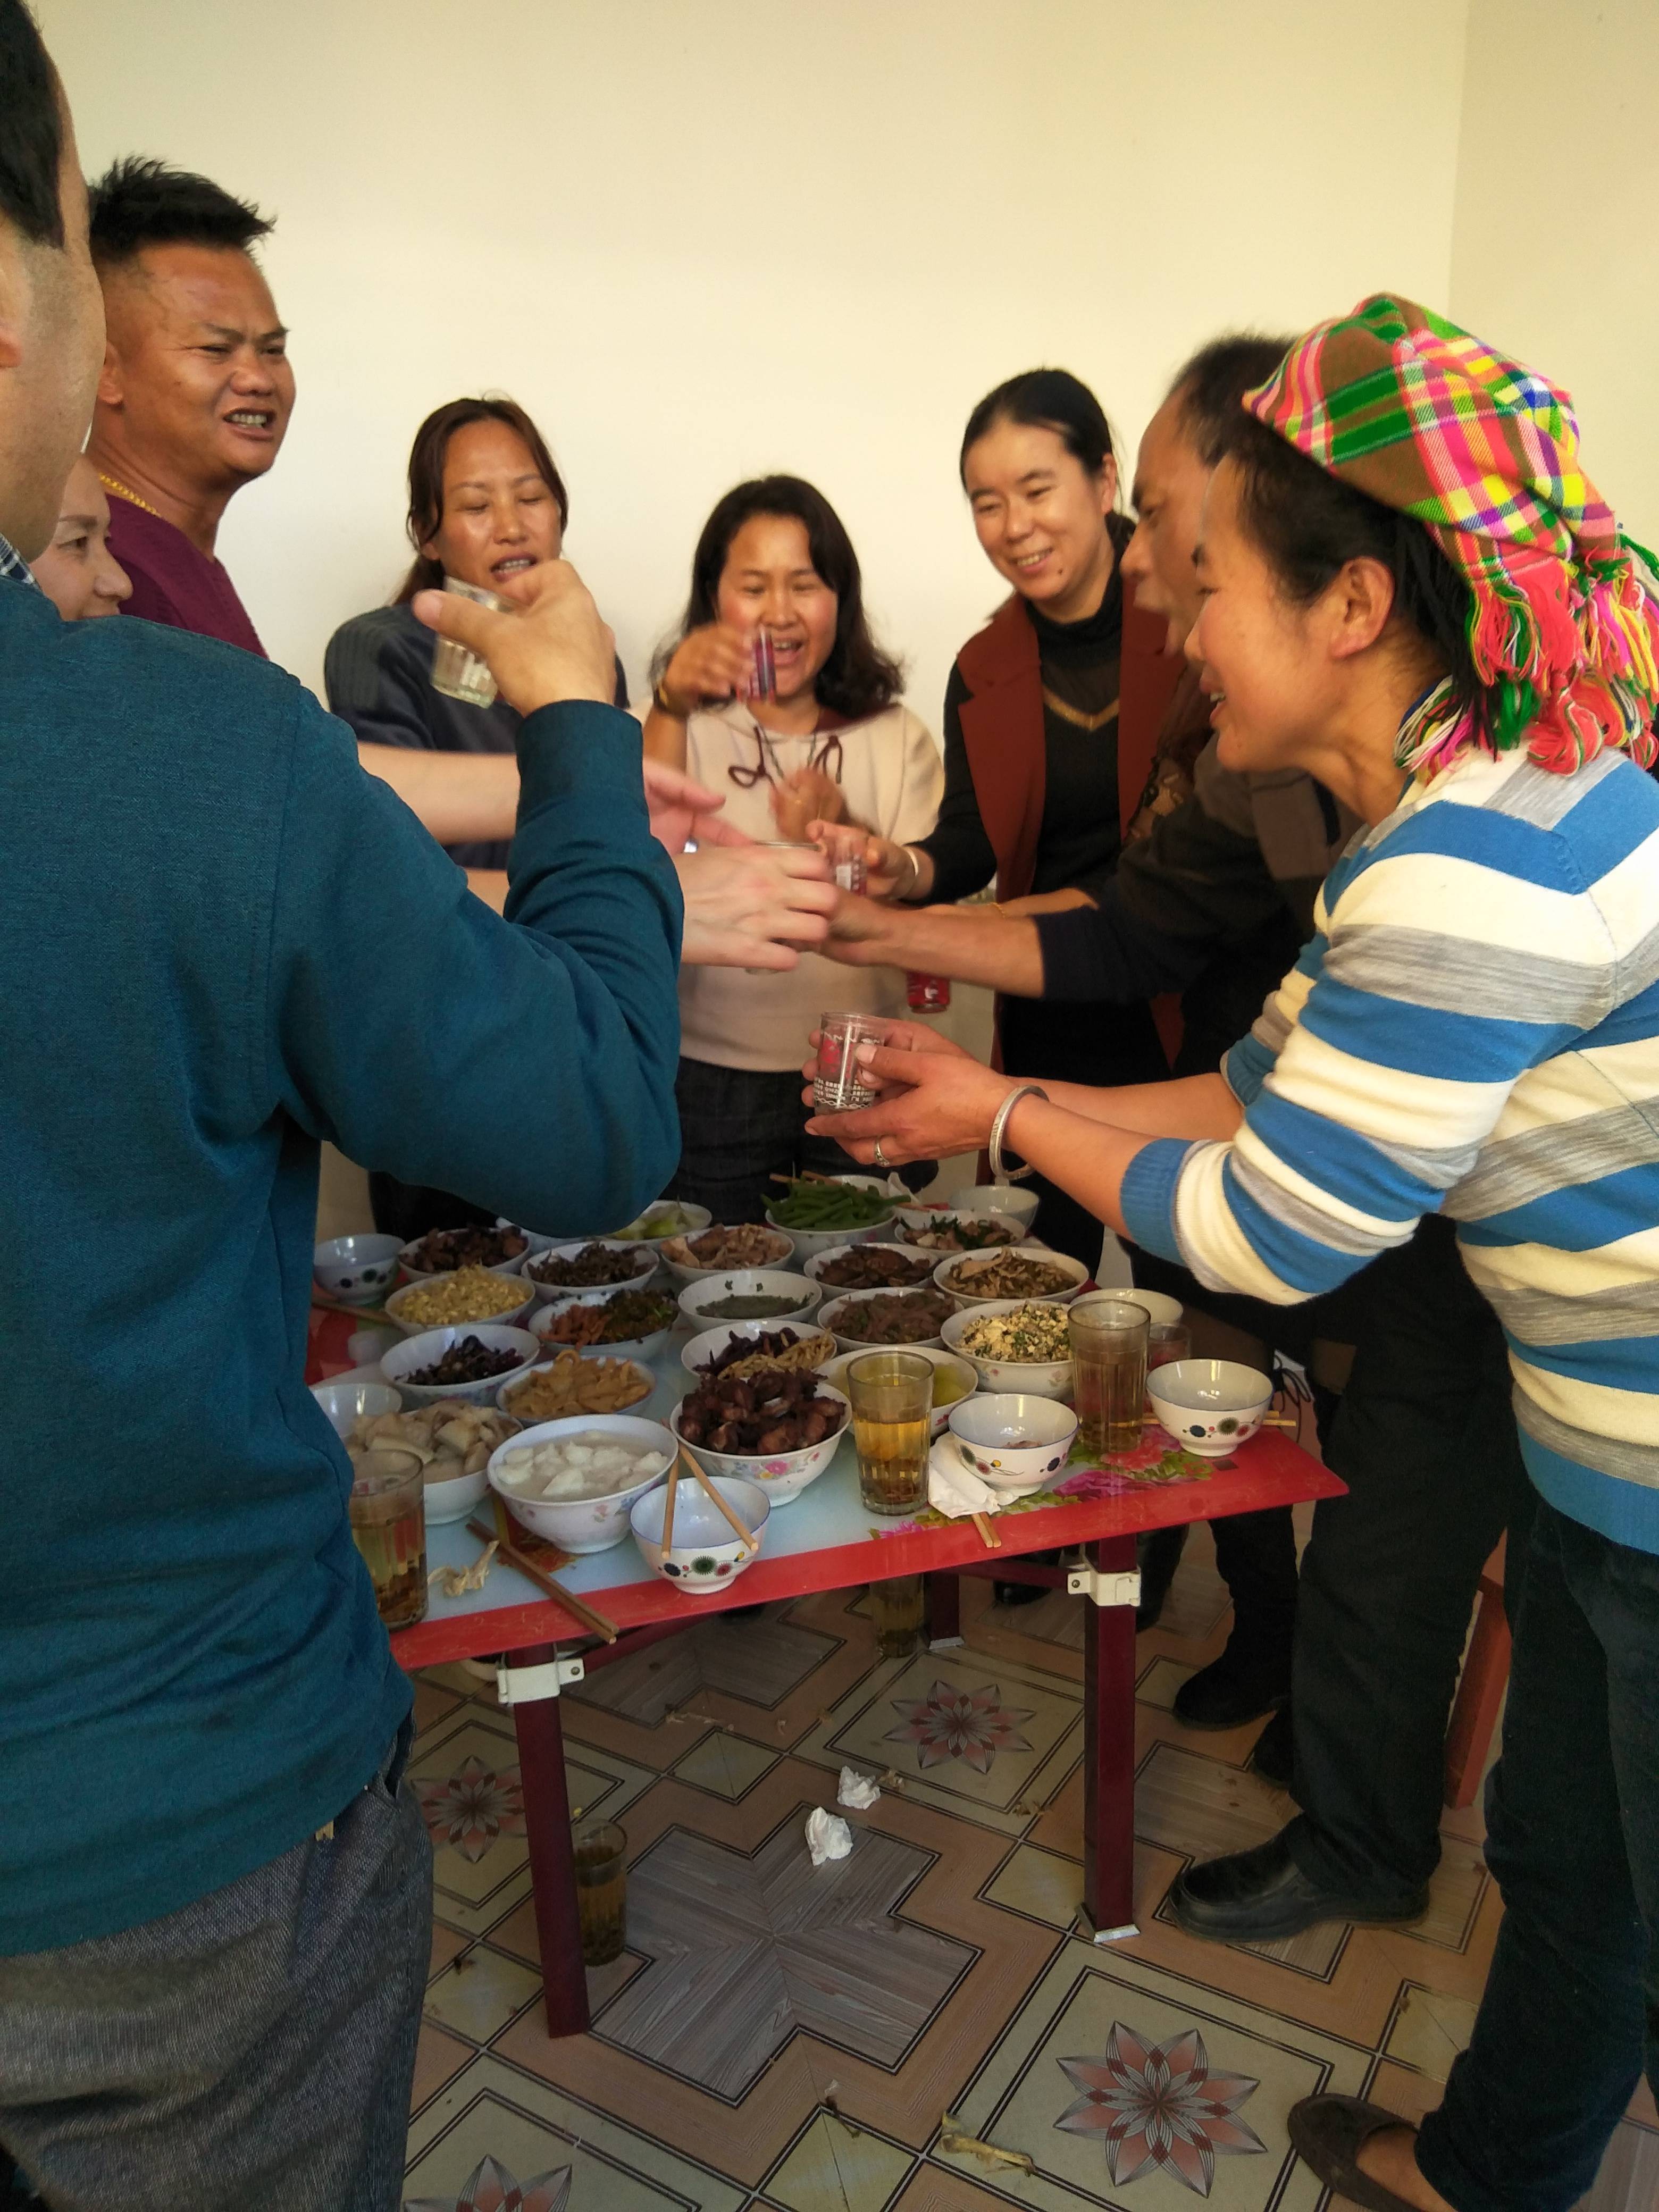 彝族餐 - 高清图片，堆糖，美图壁纸兴趣社区